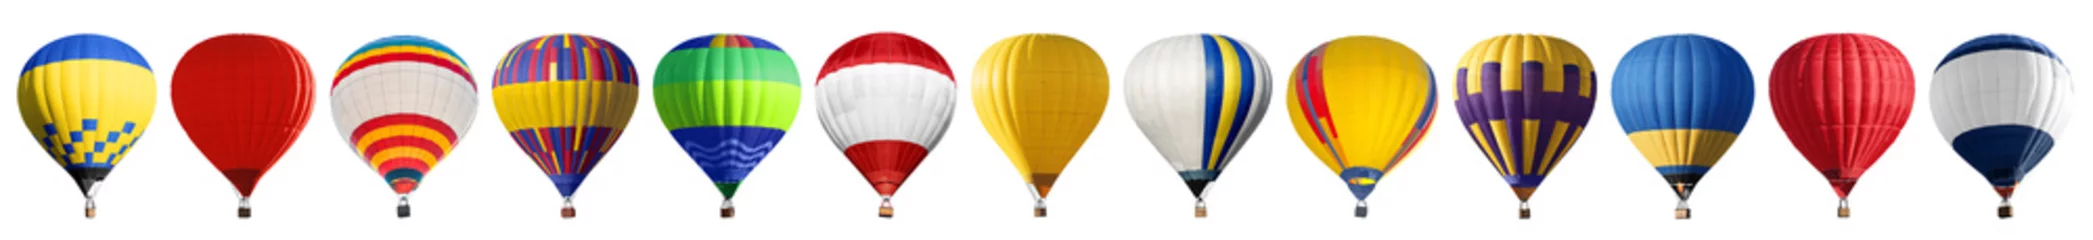 Foto op Canvas Set van heldere kleurrijke hete lucht ballonnen op witte achtergrond © New Africa